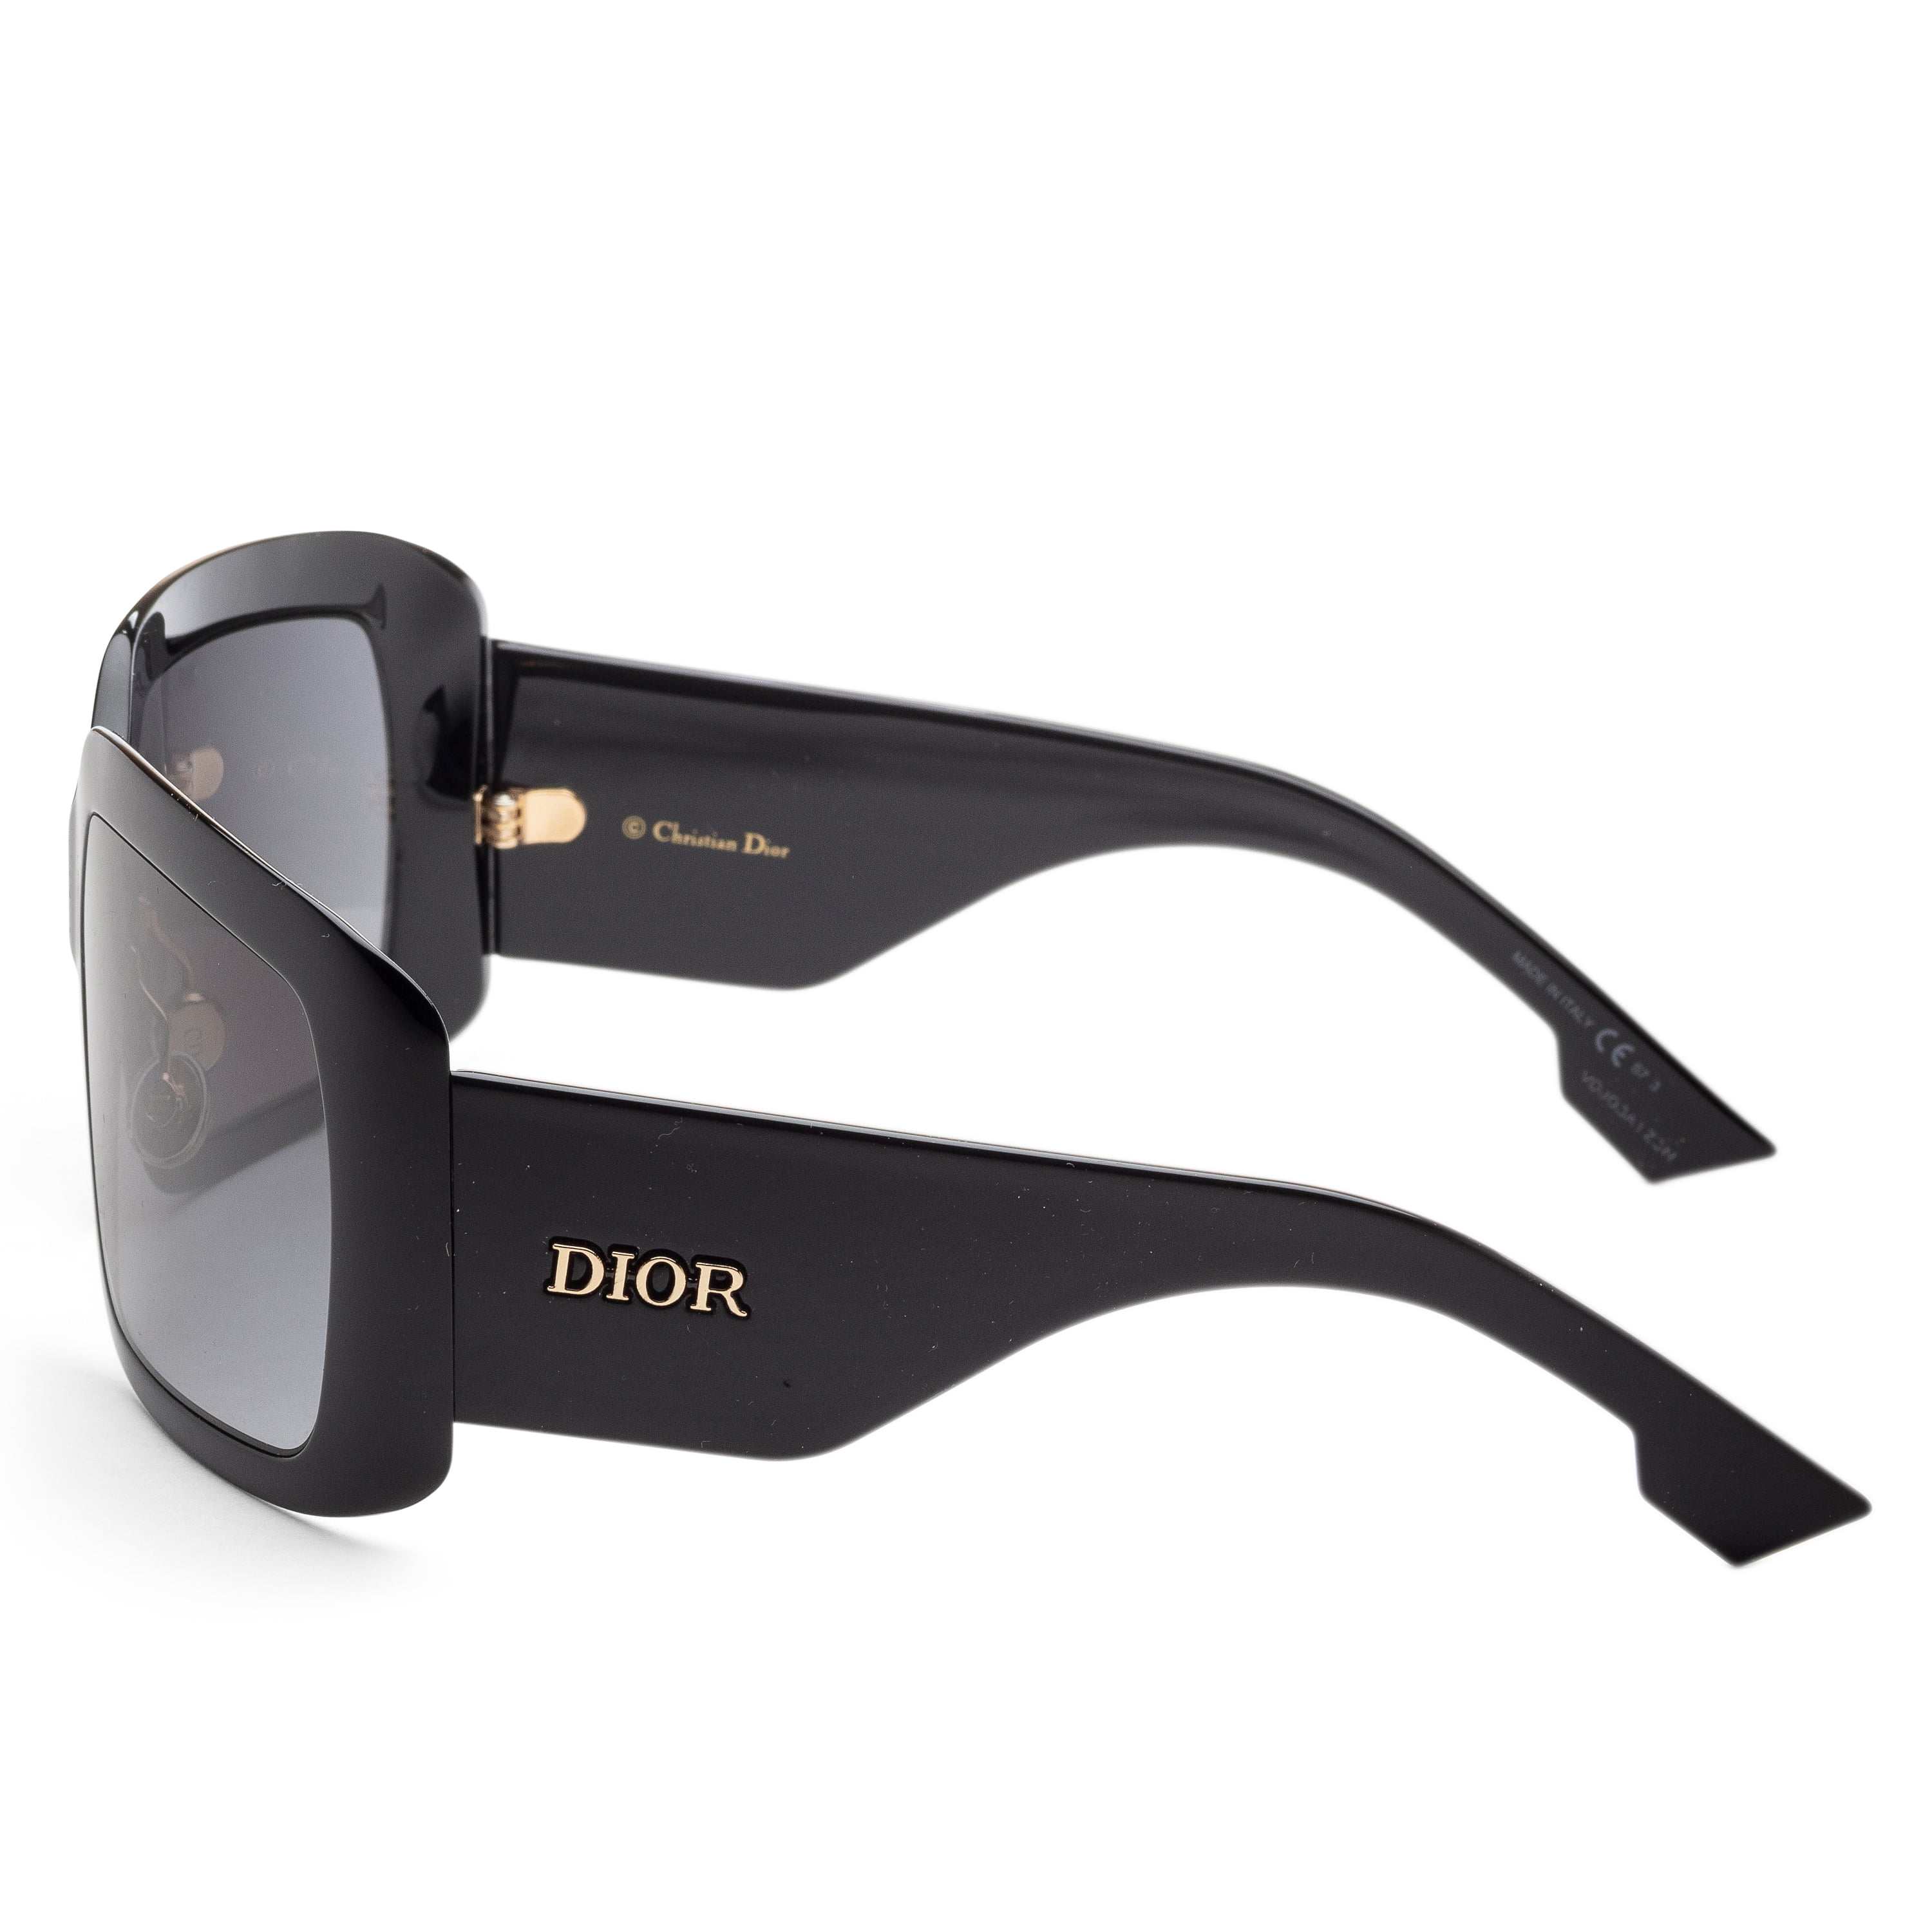 Dior SoLight1 Shield Sunglasses in Black  Designer Daydream